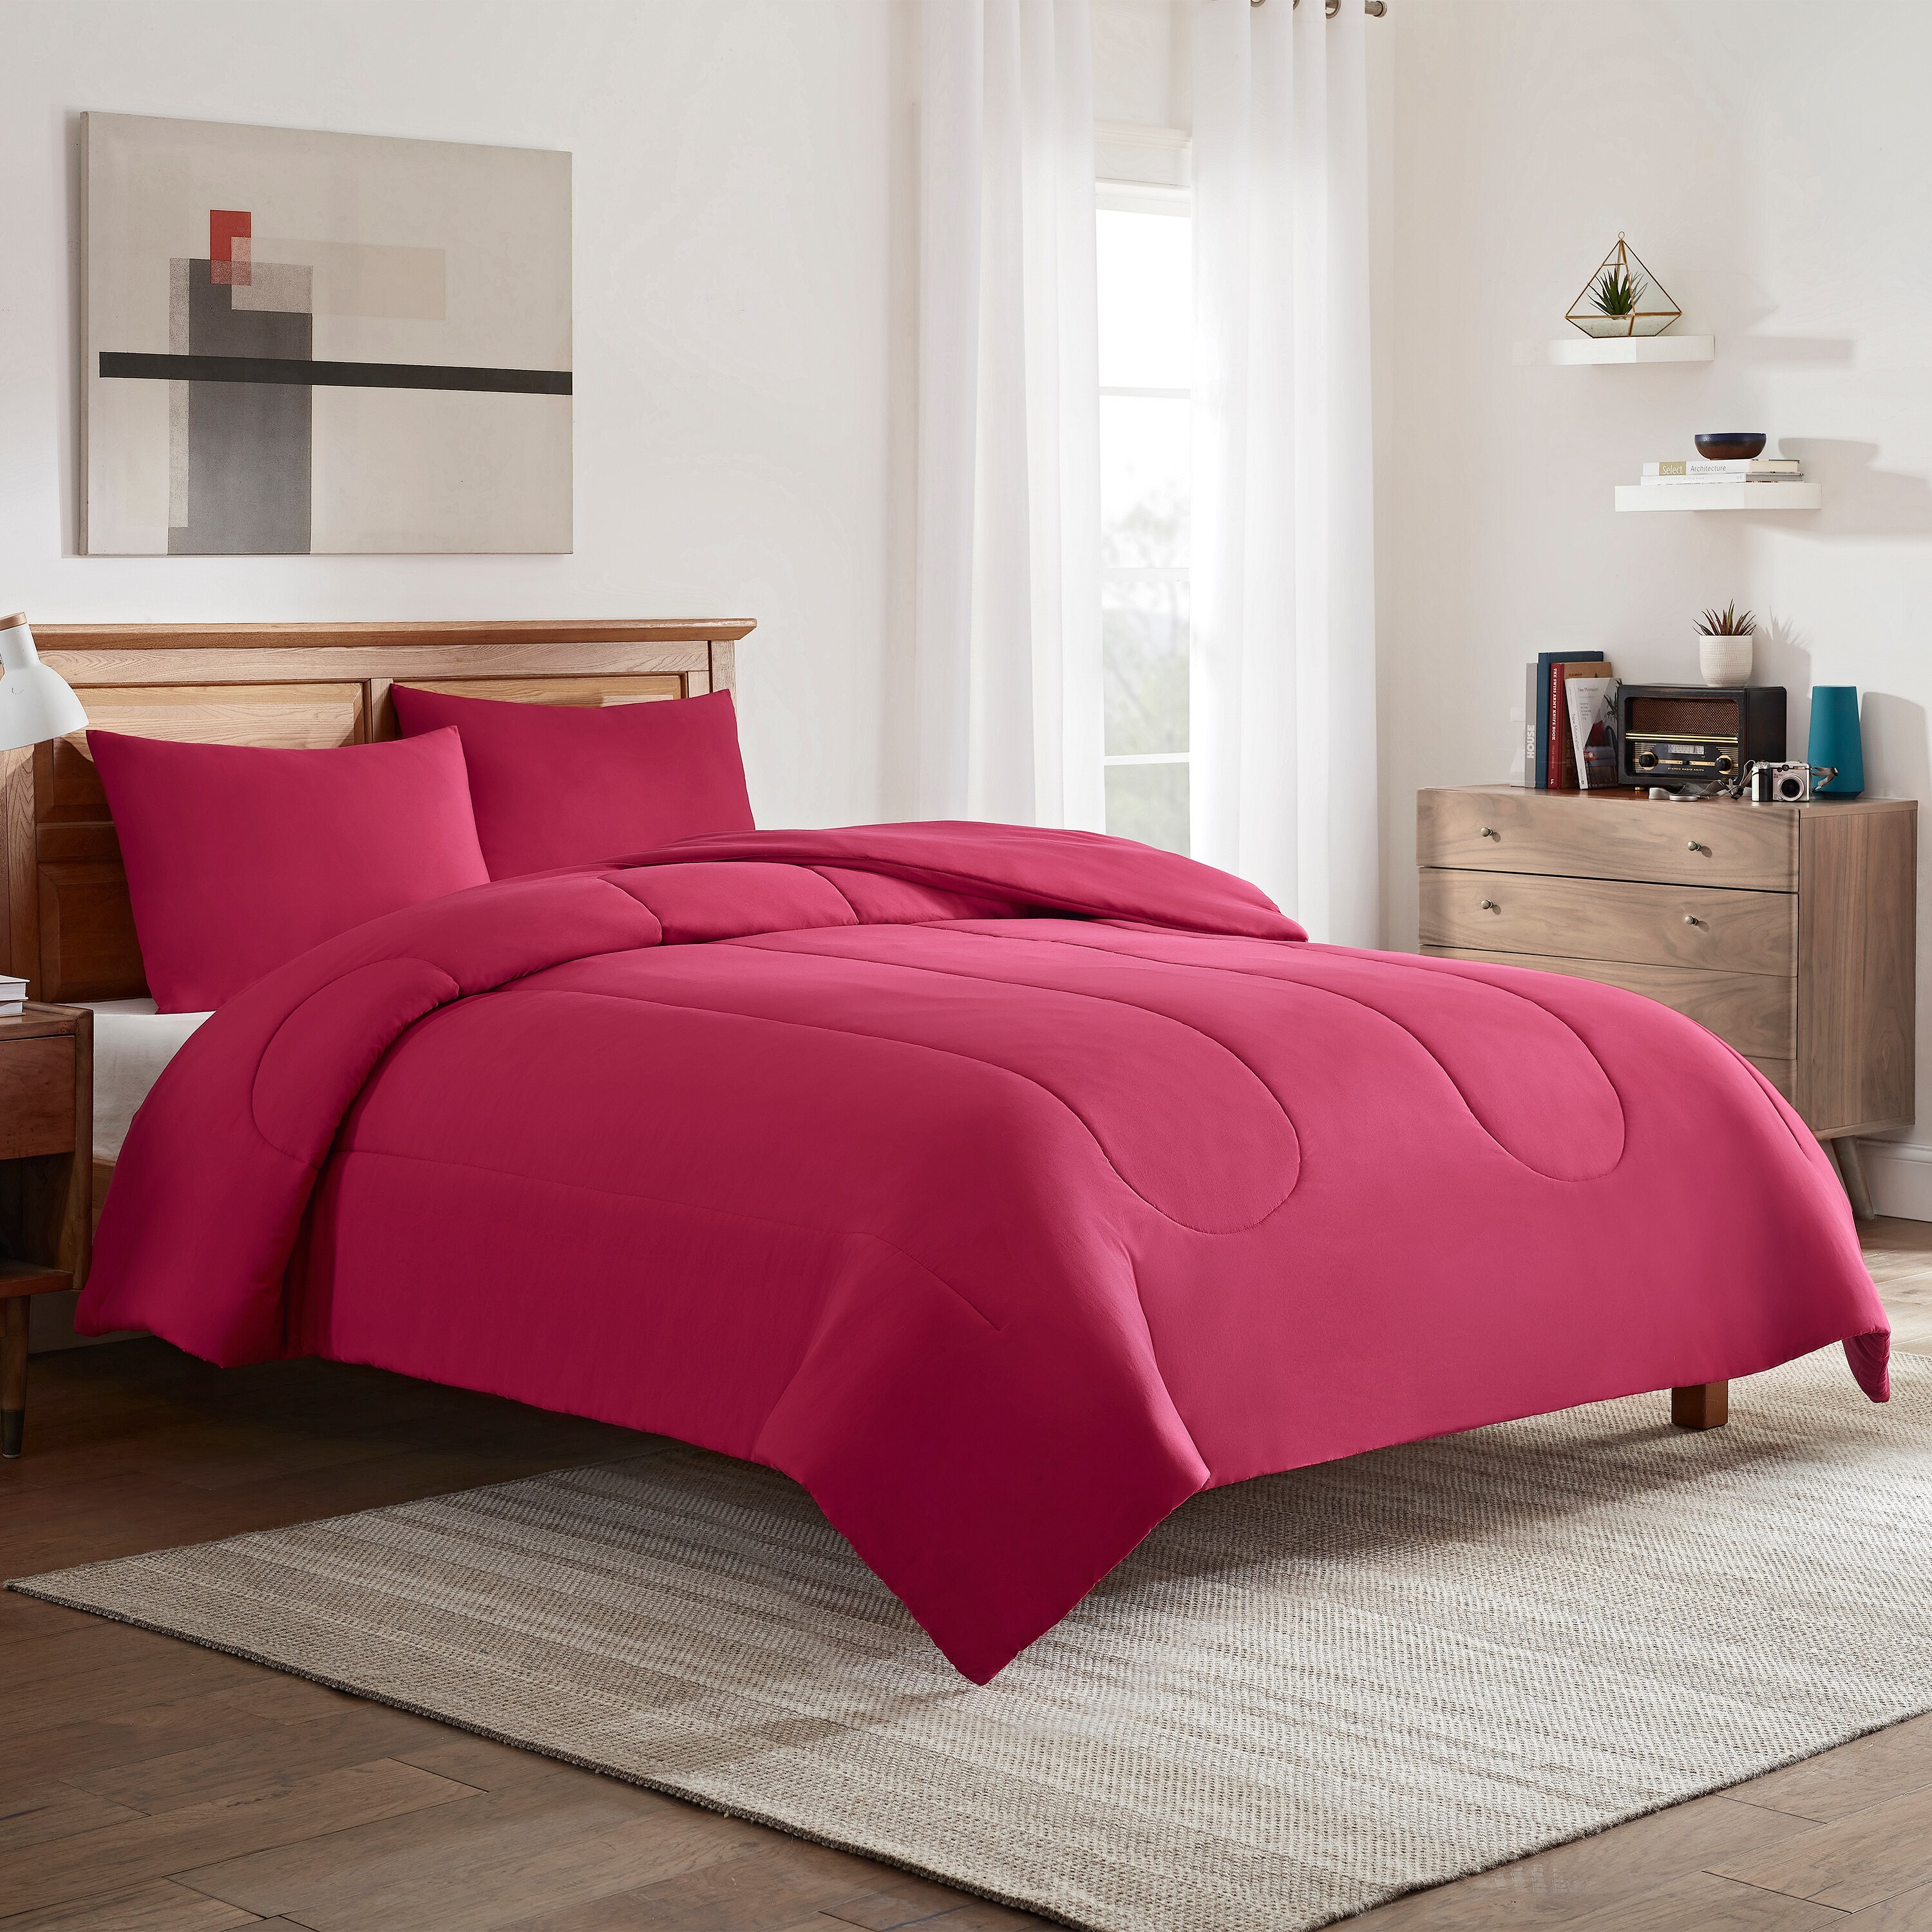 IZOD Originals Solid American Beauty Comforter Set - F/Q